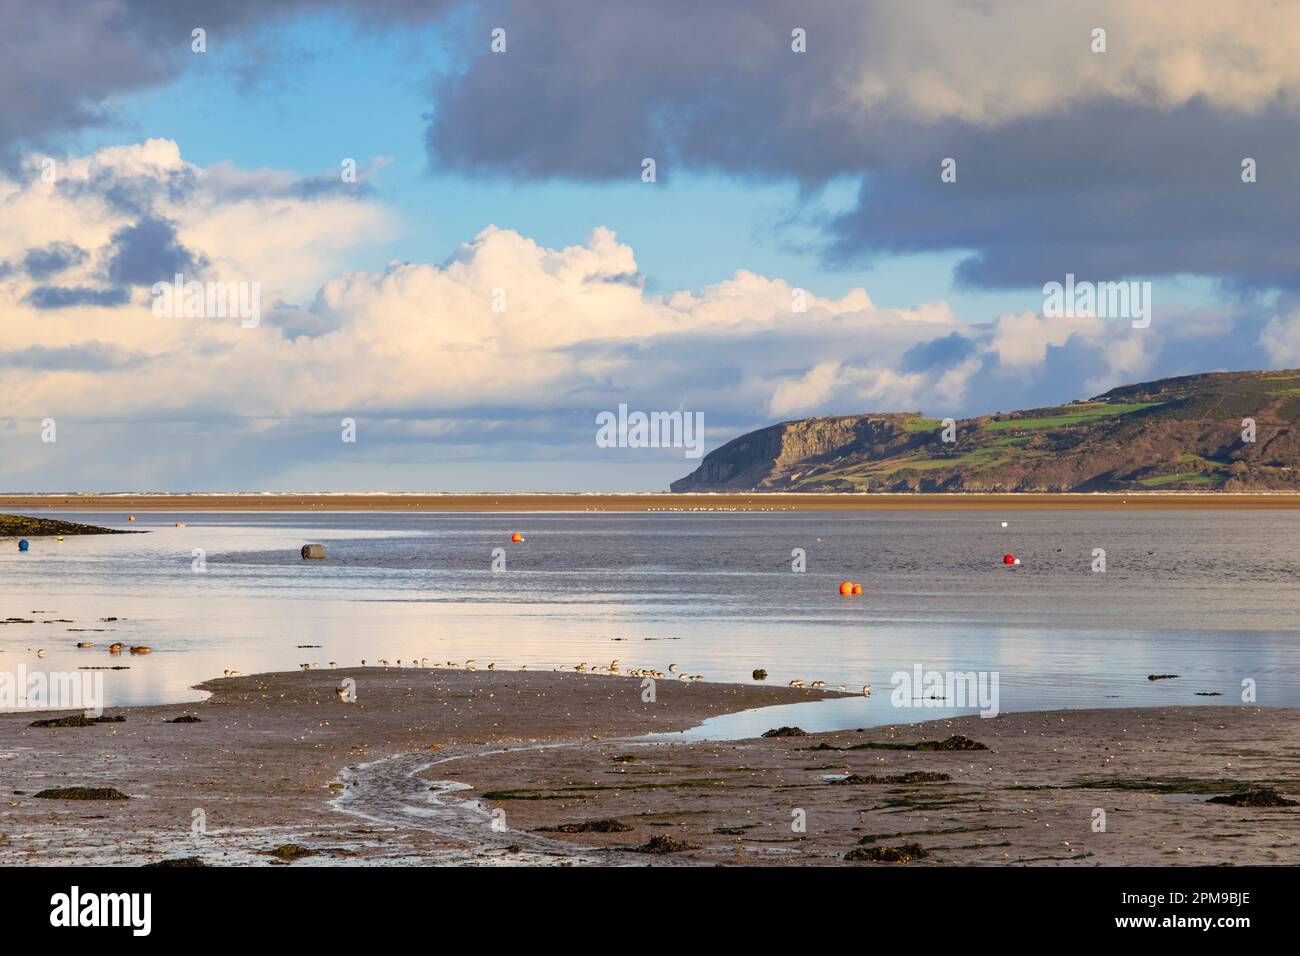 Un gregge di Dunlin (Calidris alpina) si nutrono di uccelli in guado sulla costa prima della marea in arrivo a Red Wharf Bay, Benlech, Isle of Anglesey, Wales, UK Foto Stock